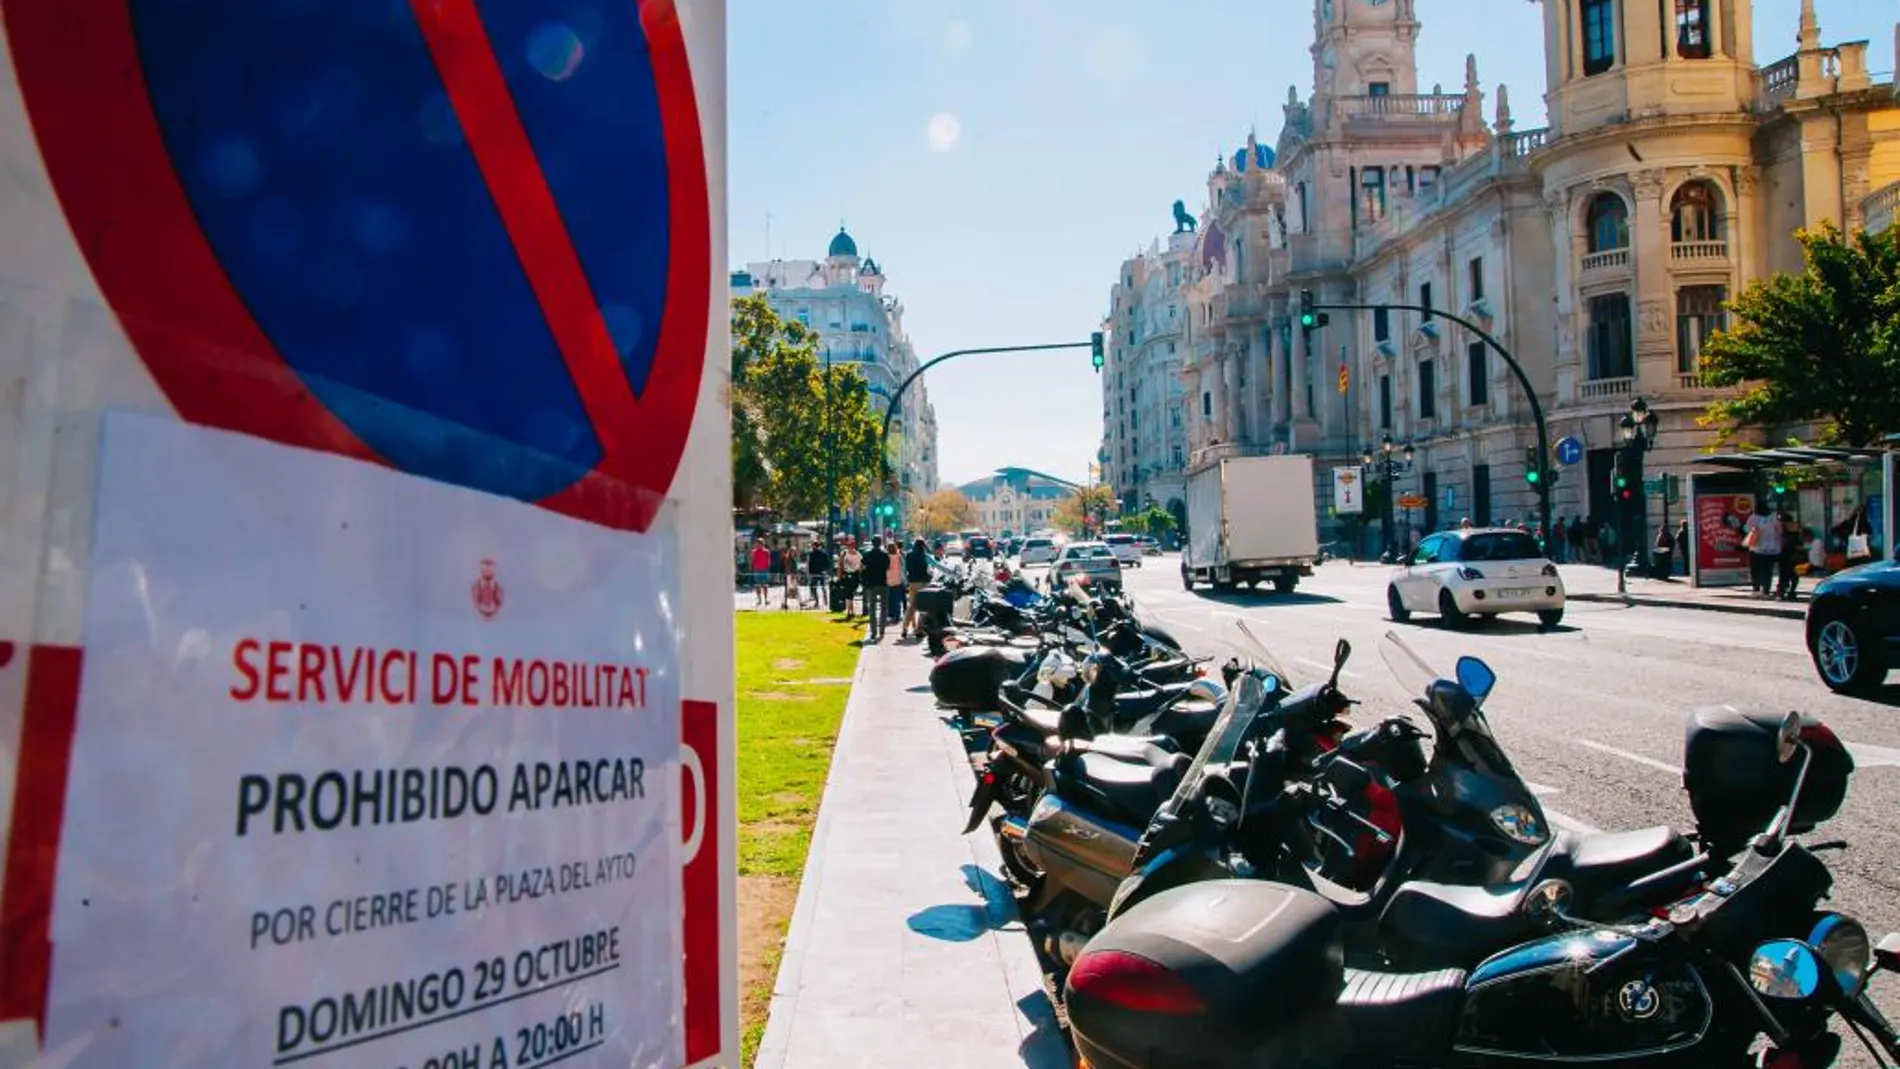 Zona que será peatonal a partir del próximo mes de abril. Desaparecerán 150 plazas de aparcamiento para motocicletas